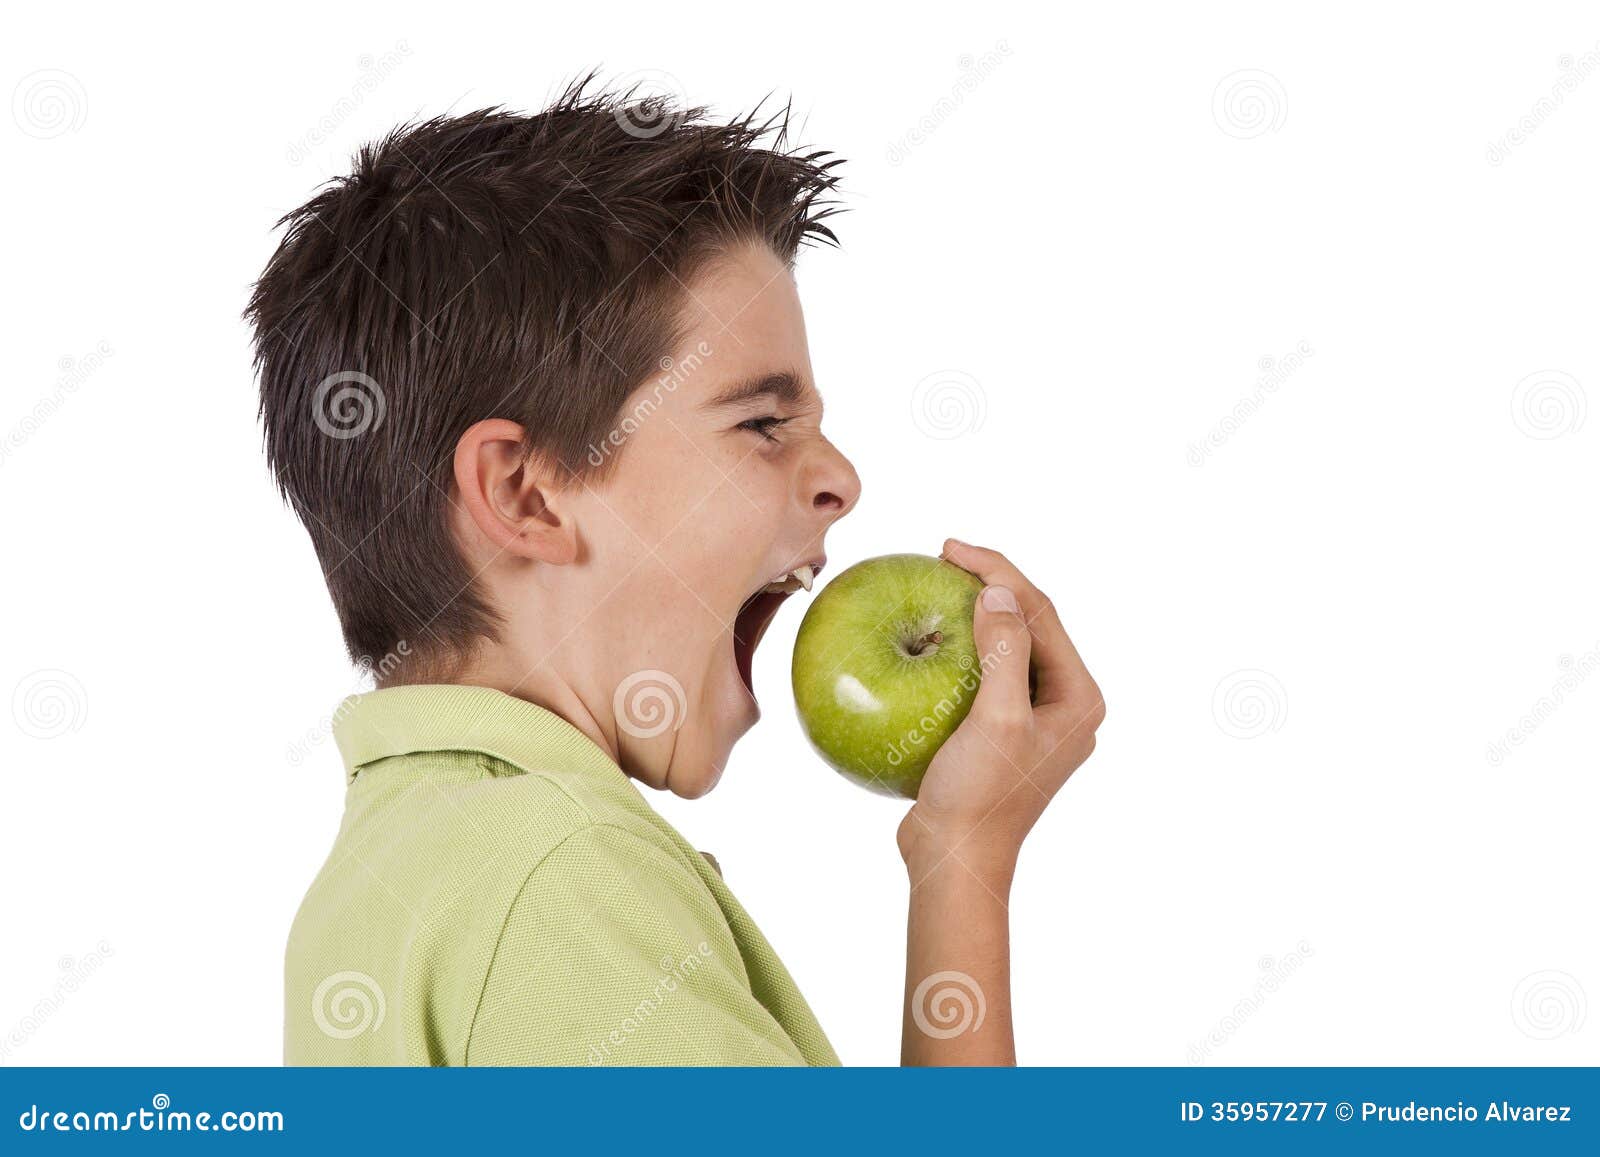 Обгрызенное яблоко как правильно